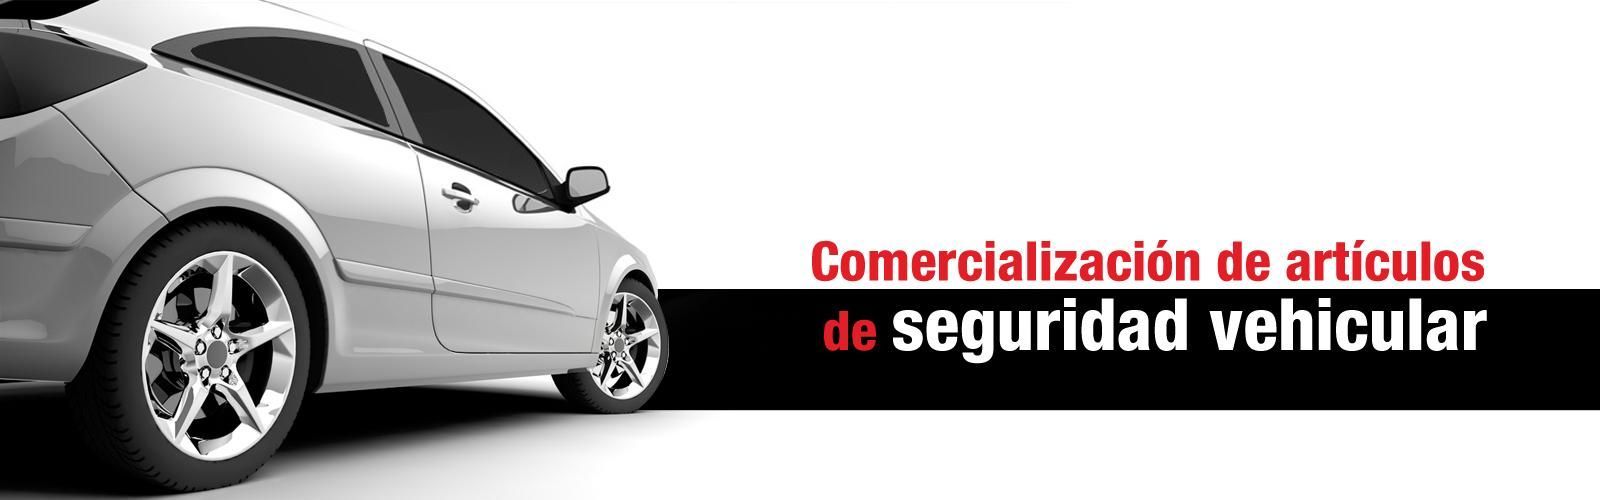 Artículos de seguridad vehicular en Córdoba